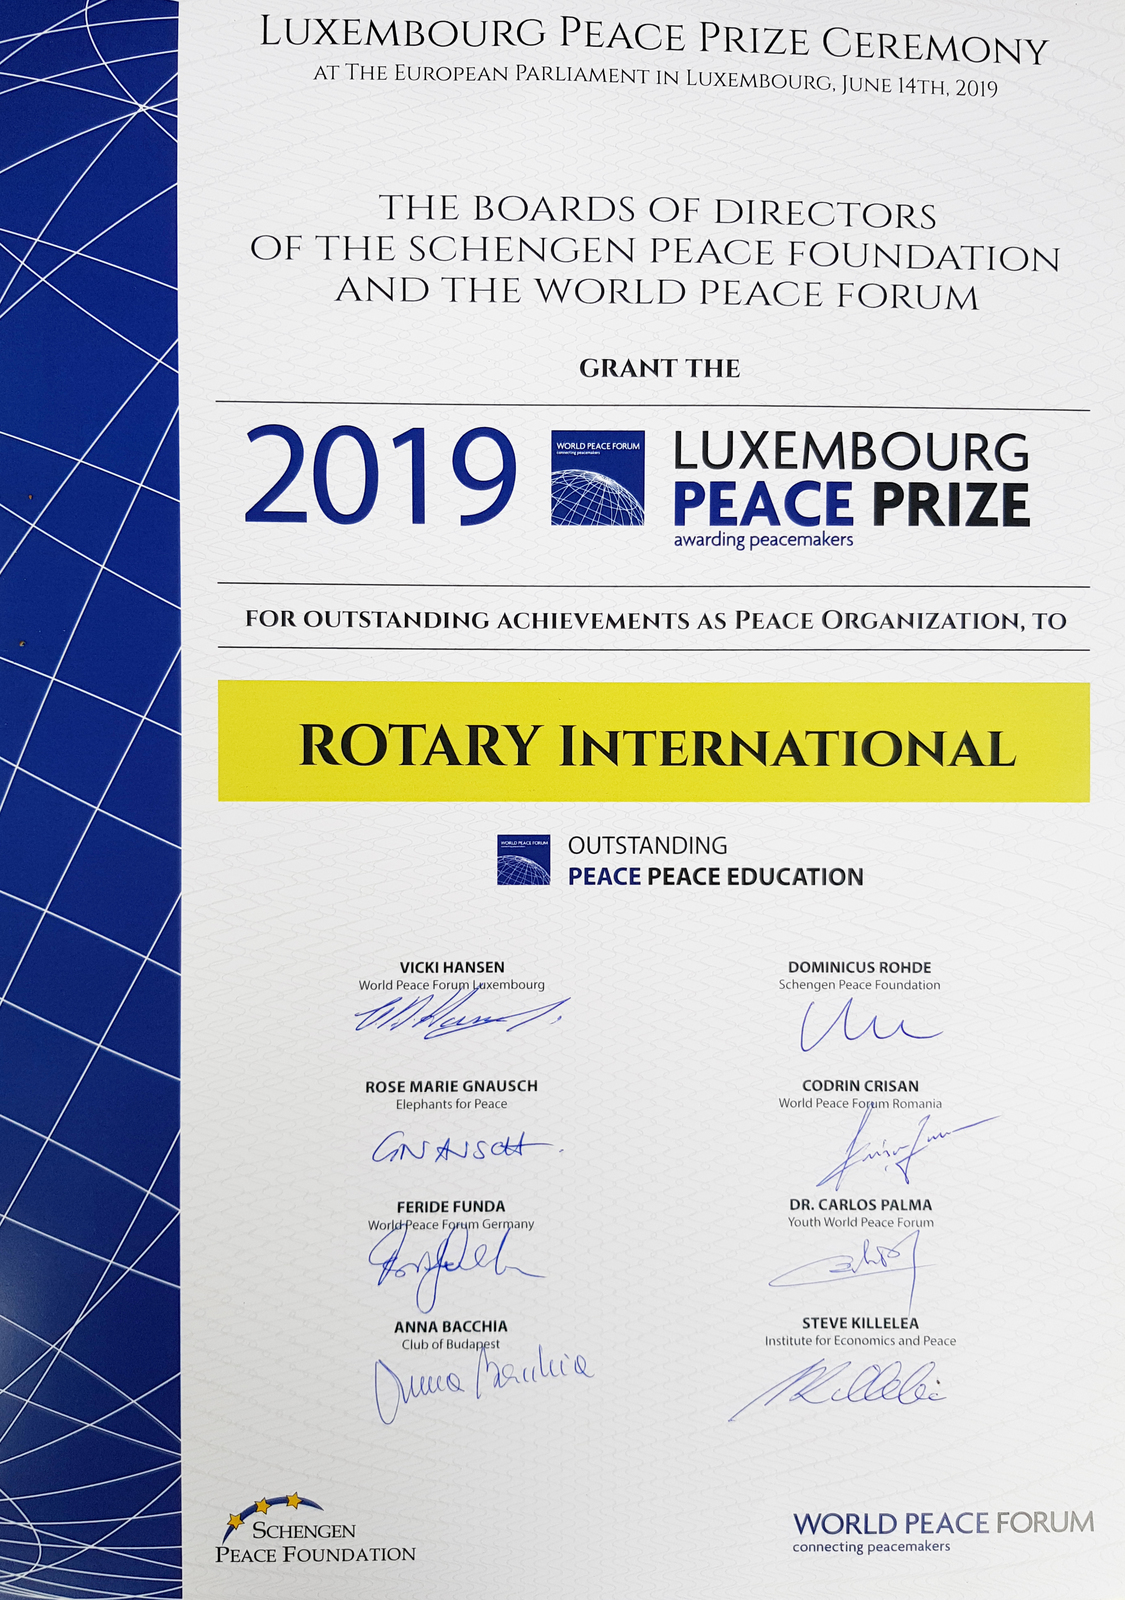 2019, peace prize, luxemburg, eu